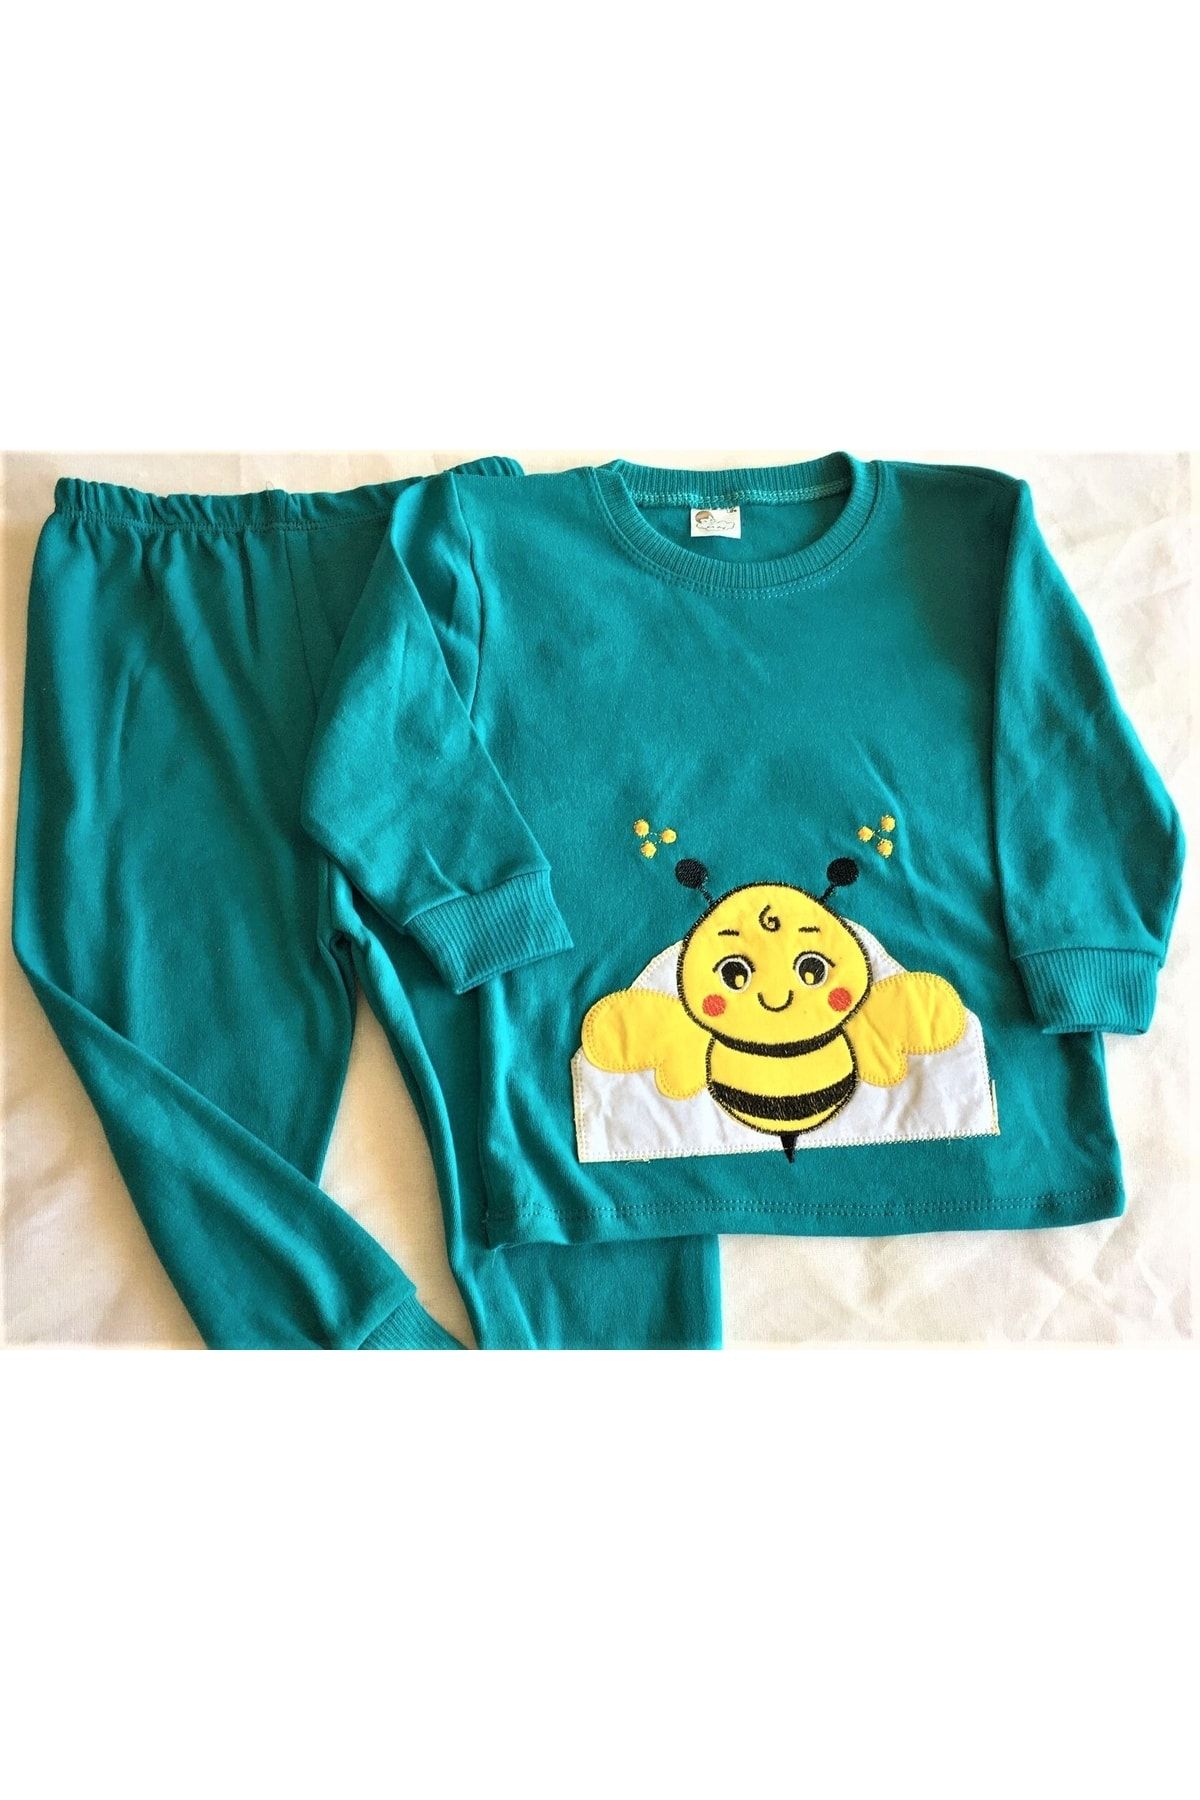 MEMOCAN Arı Işlemeli Bebek Pijama Takımı